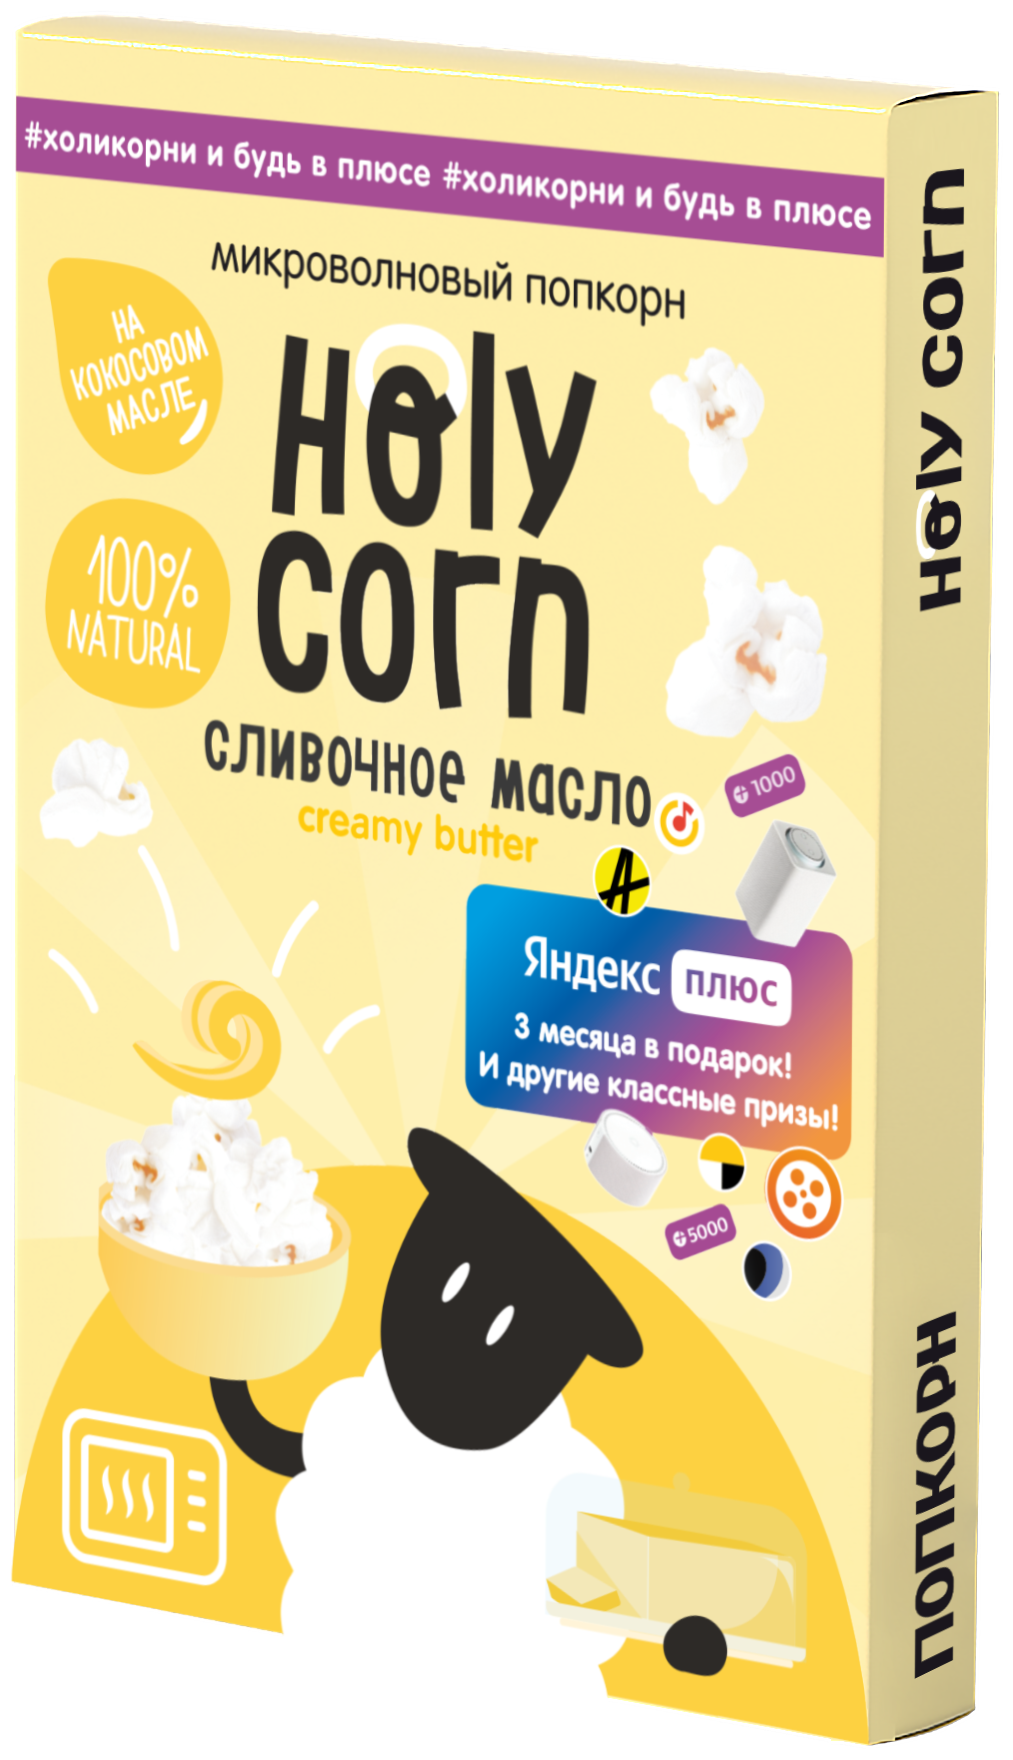 Попкорн микроволновый СВЧ Holy Corn "Сливочное масло" 70 г х 5 шт